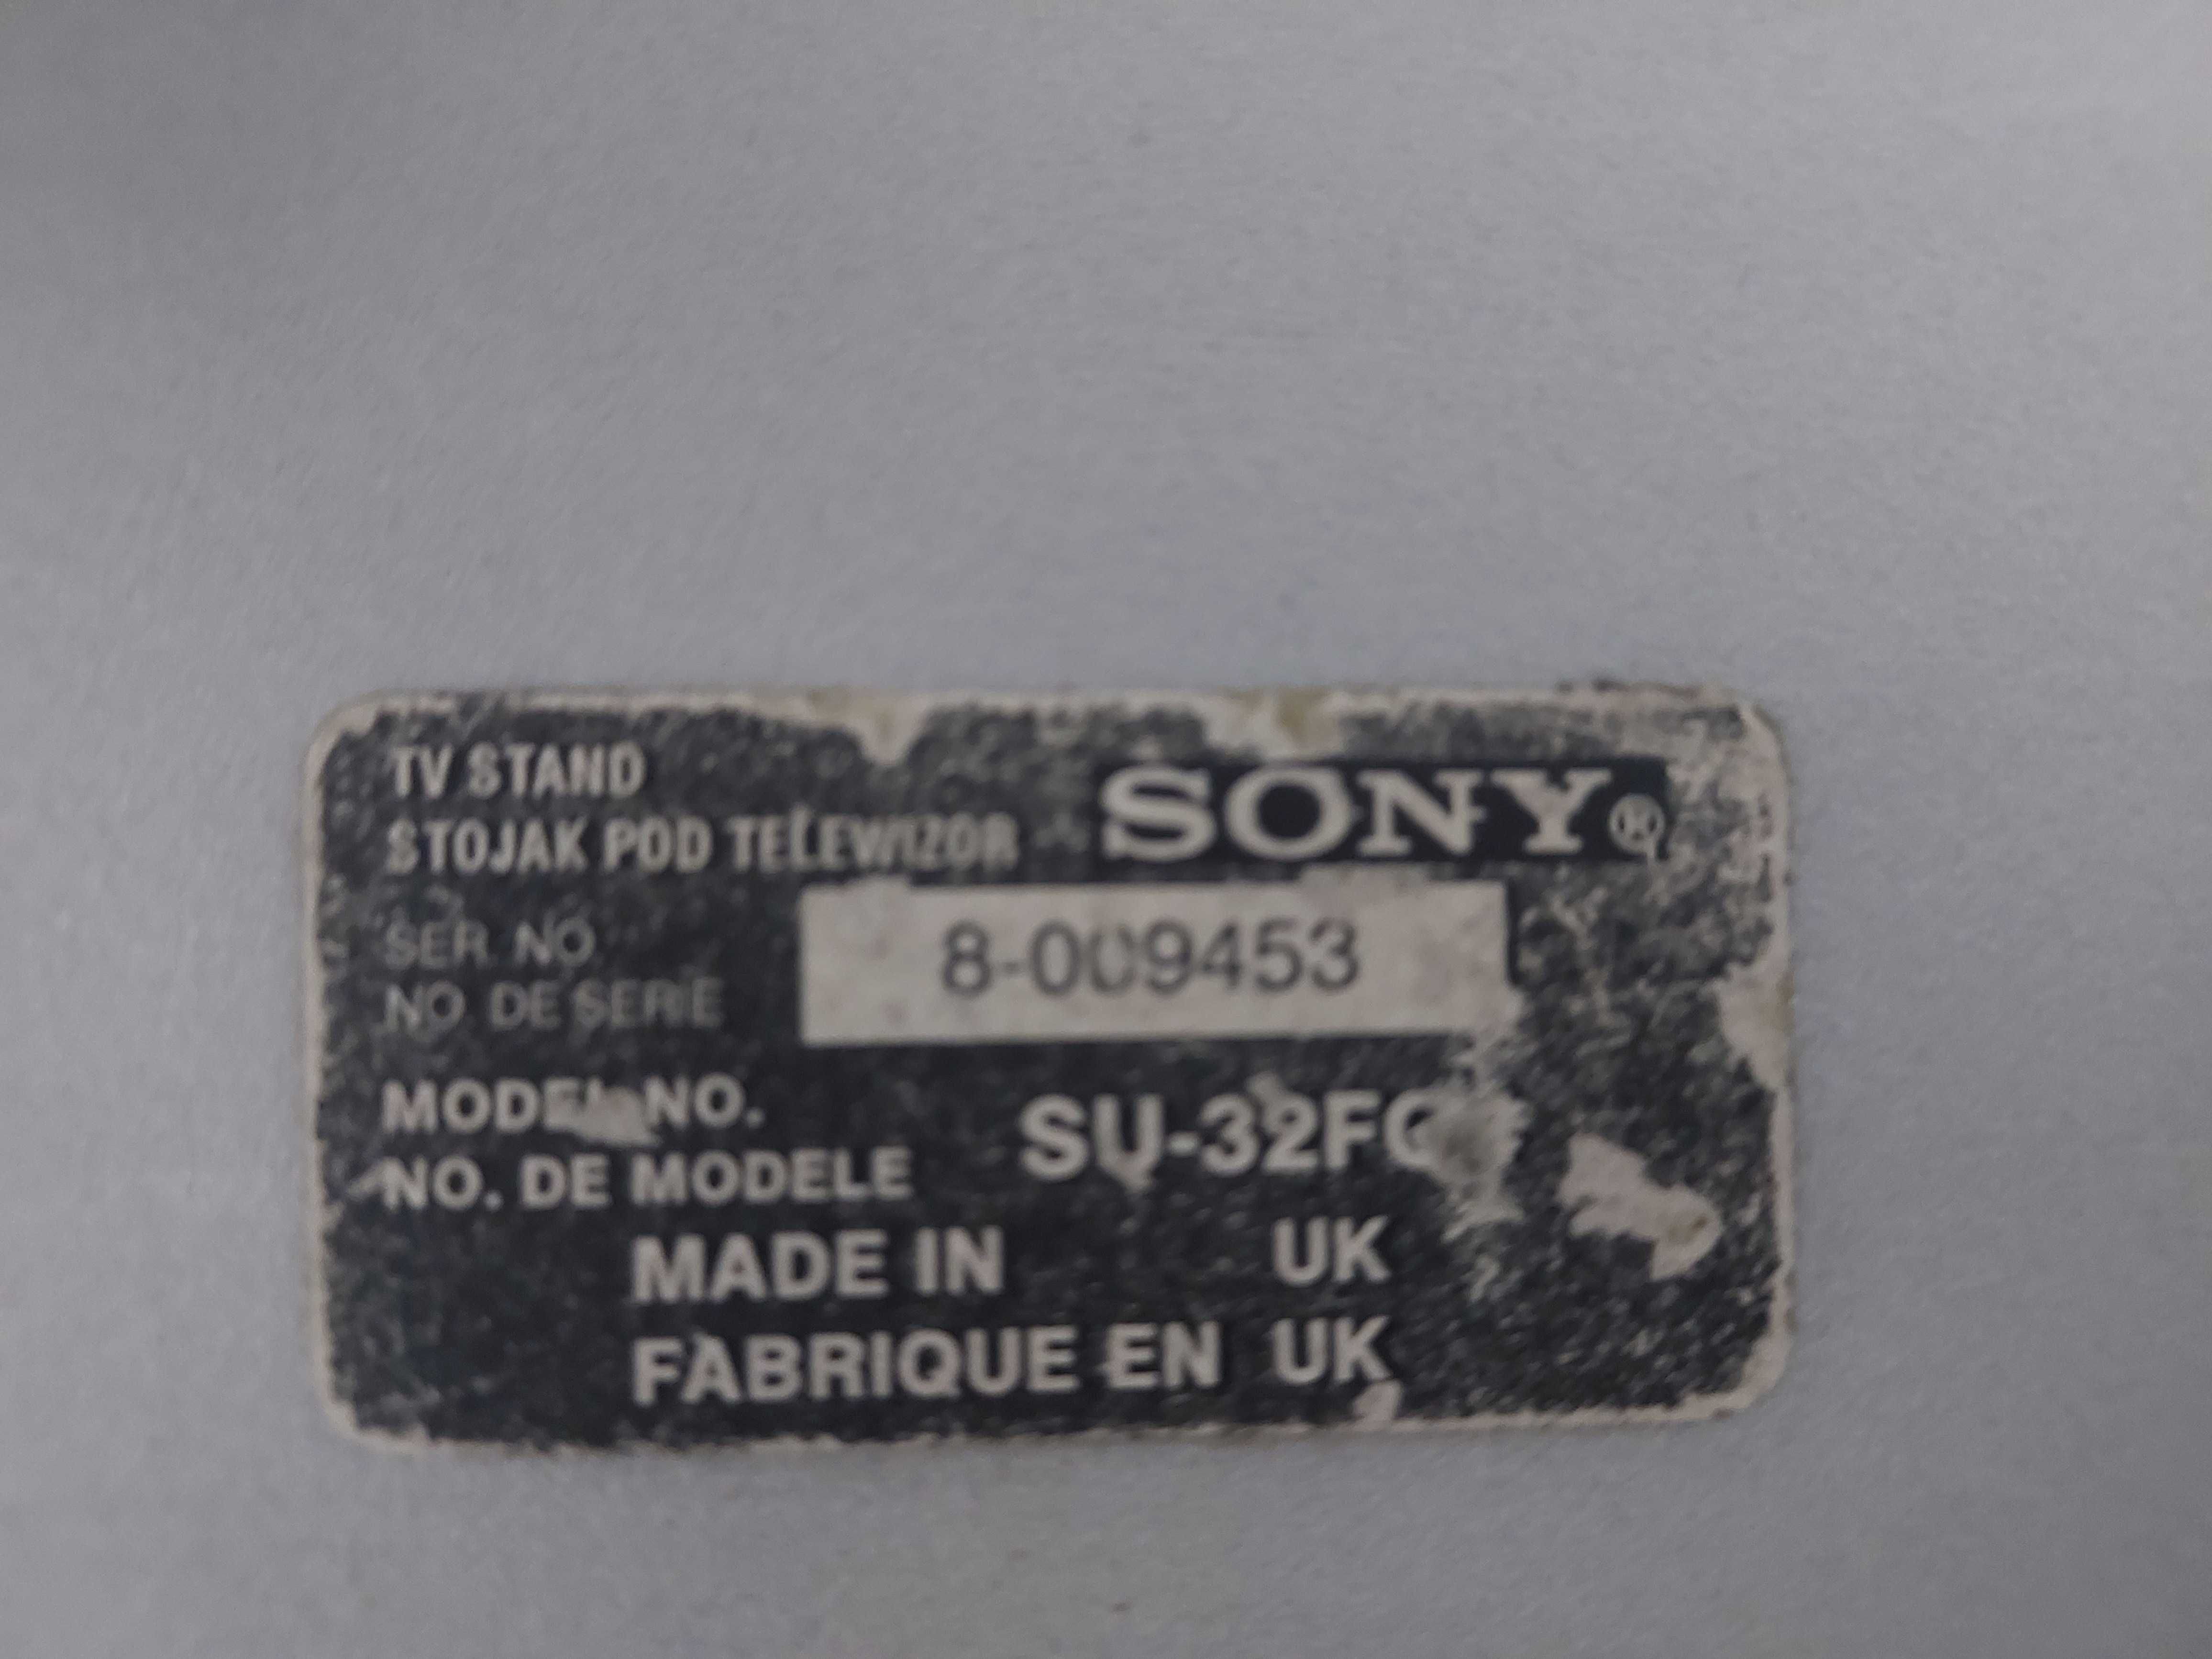 Móvel para TV Tubo 32' (Stand Sony gray)